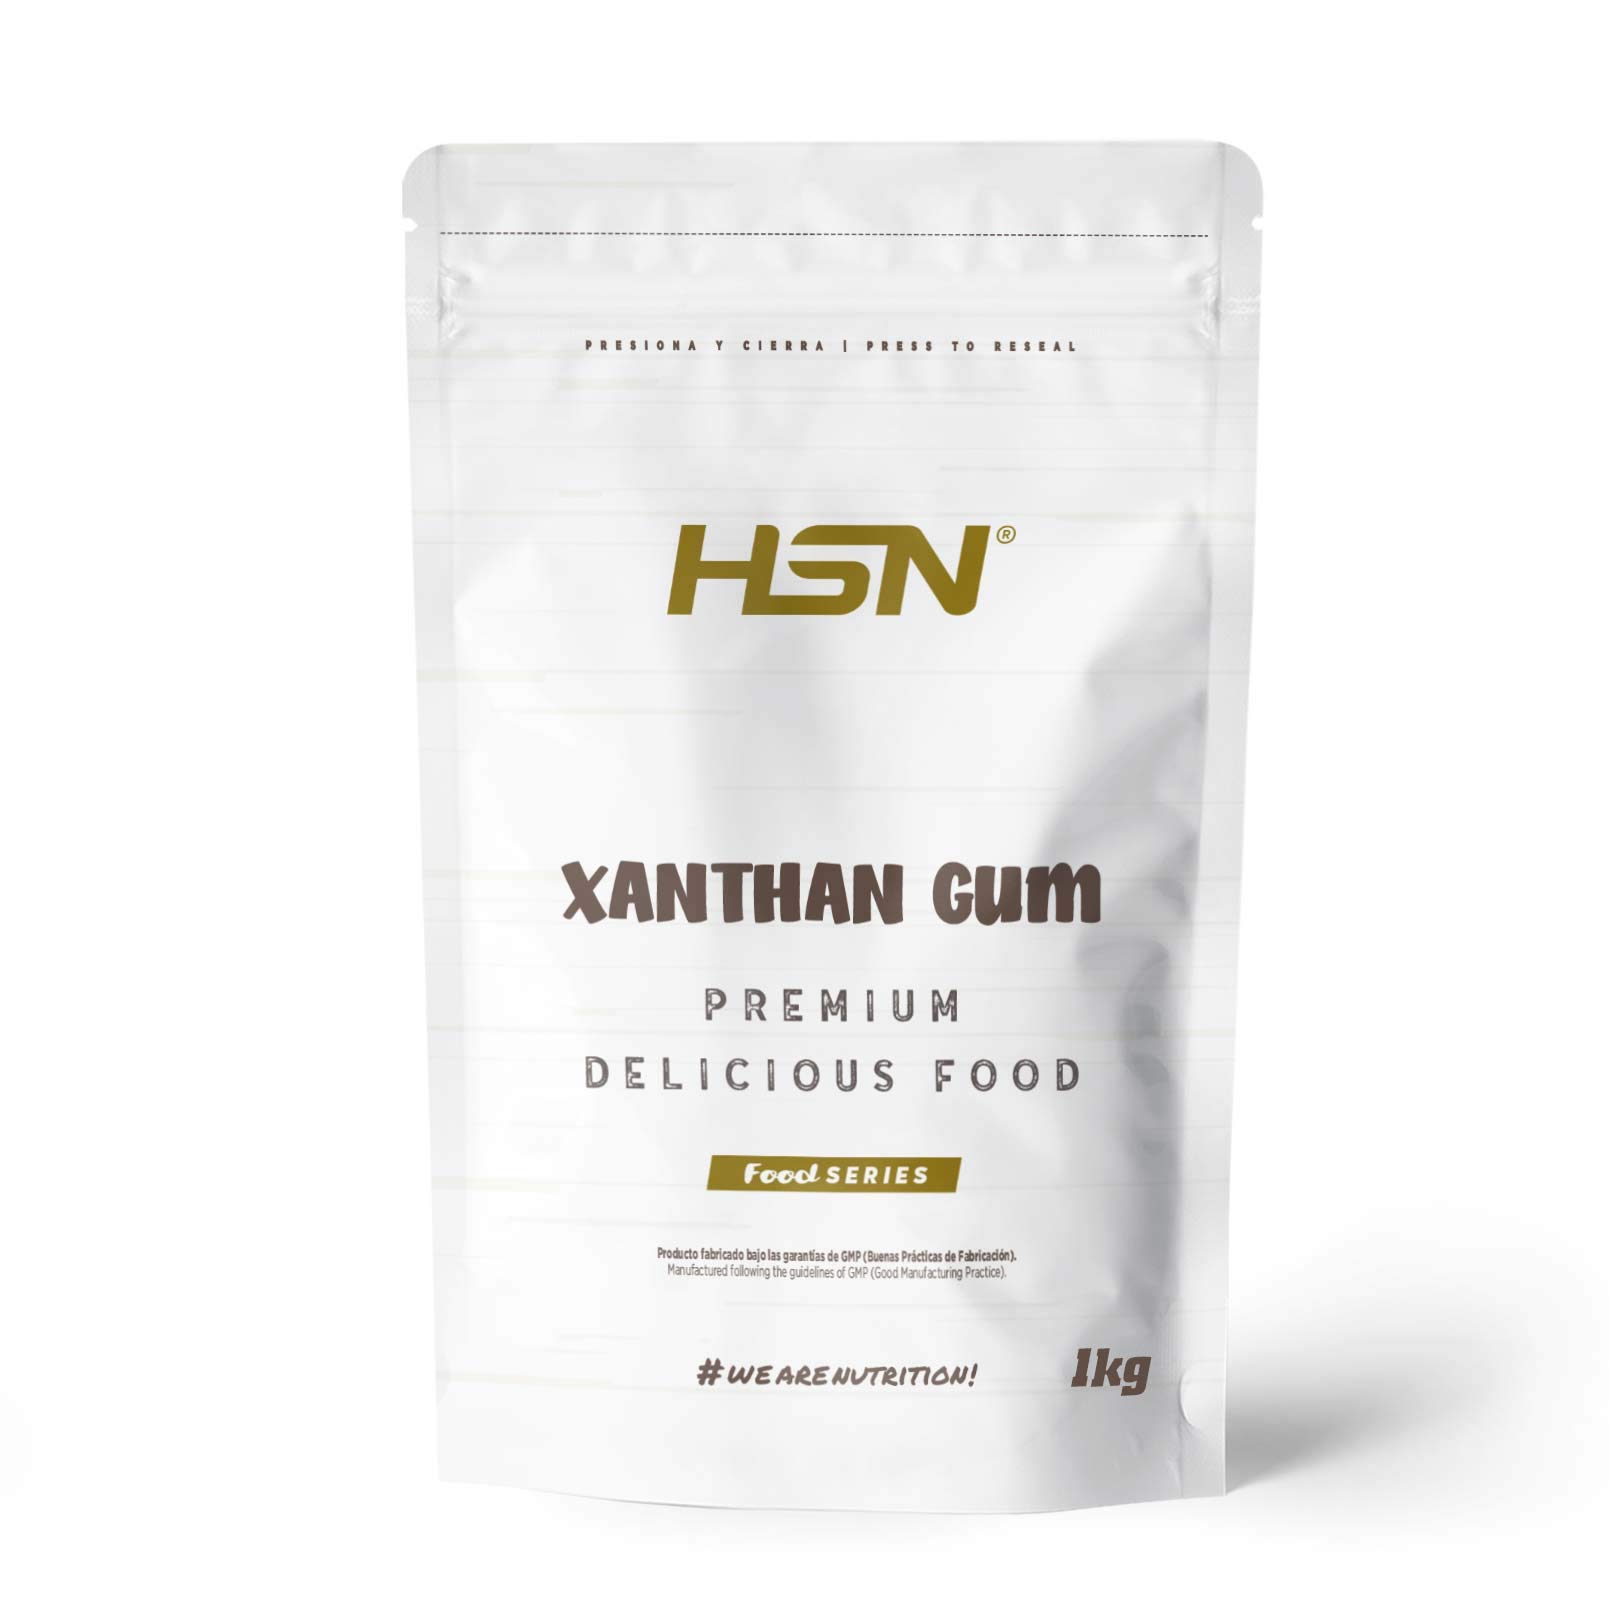 HSN – Xanthan Gum Pulver | 1 Kg | Verdickungsmittel für Lebensmittel | Ideal für Fitness-Rezepte | Löslicher Ballaststoff zum Andicken | GVO-frei, vegan, glutenfrei, laktosefrei